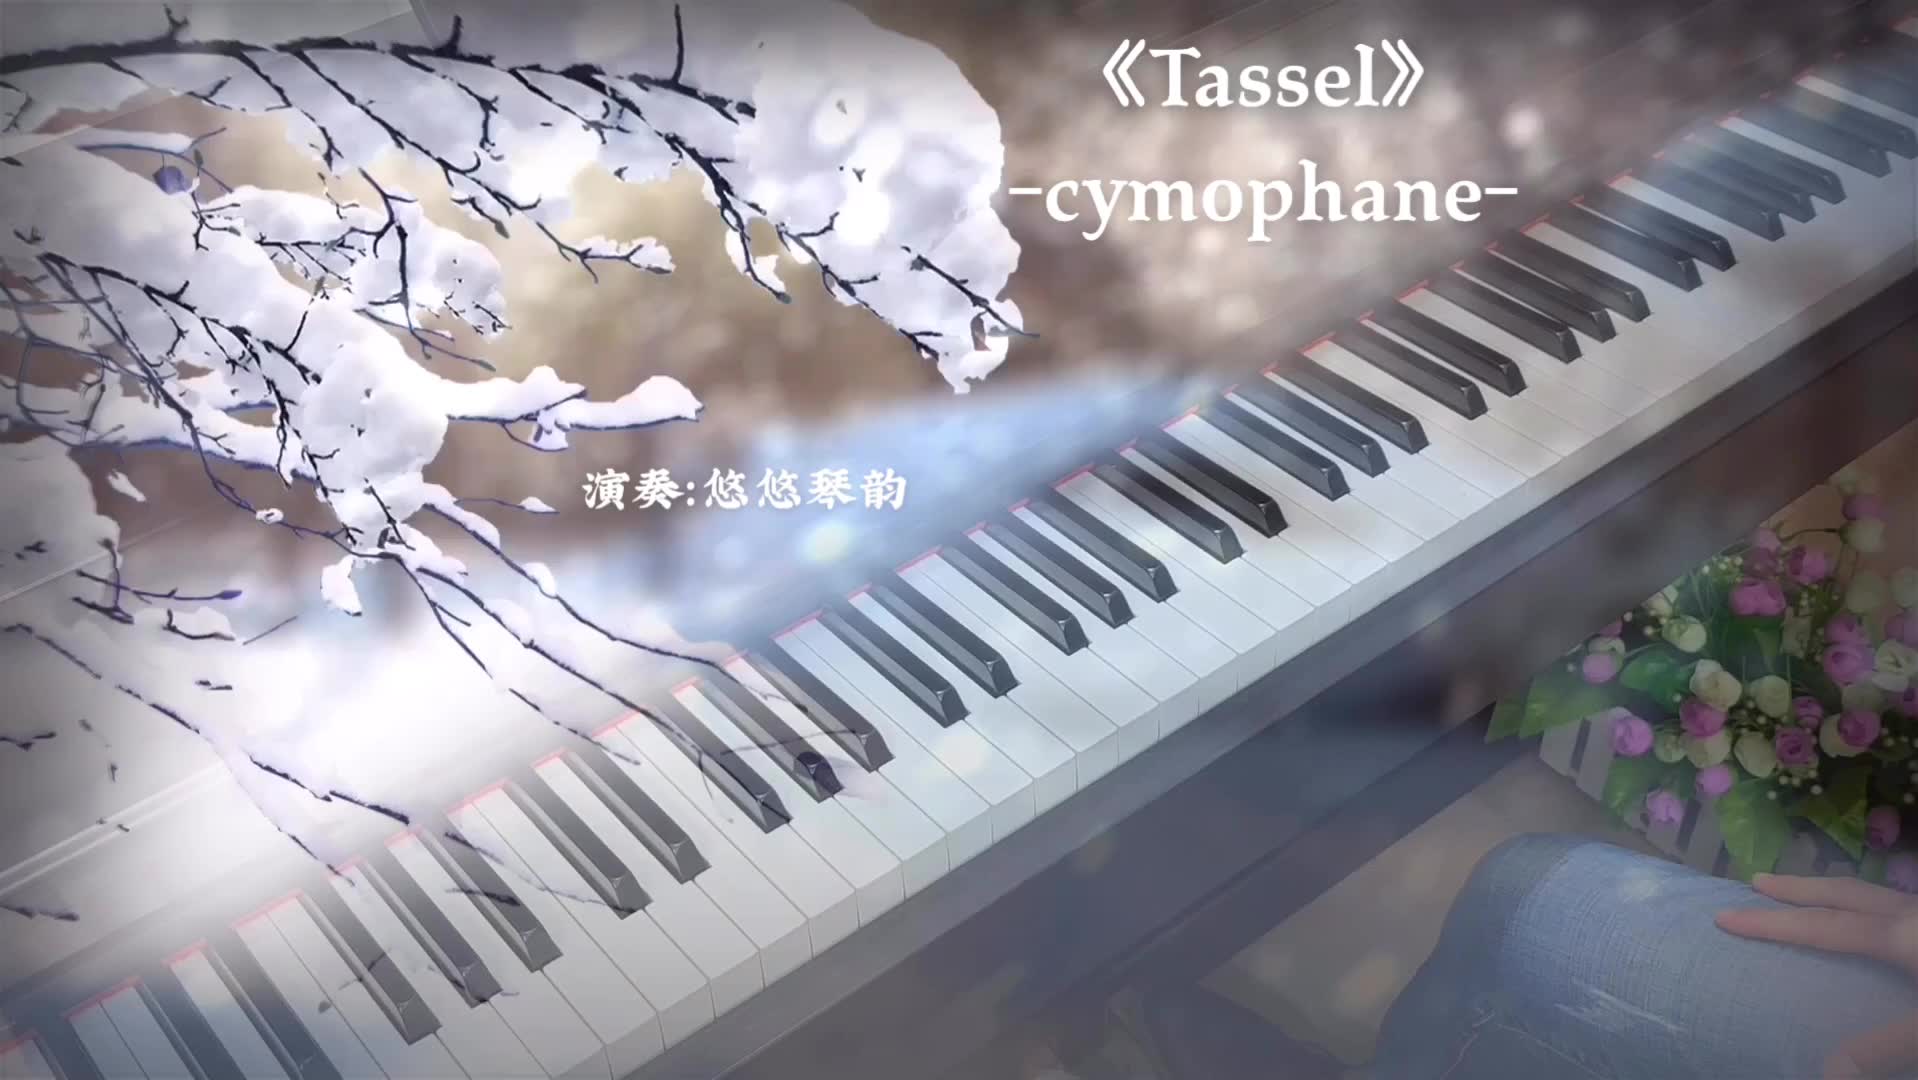 【钢琴】《Tassel》这个神仙旋律，爱了！_哔哩哔哩 (゜-゜)つロ 干杯~-bilibili